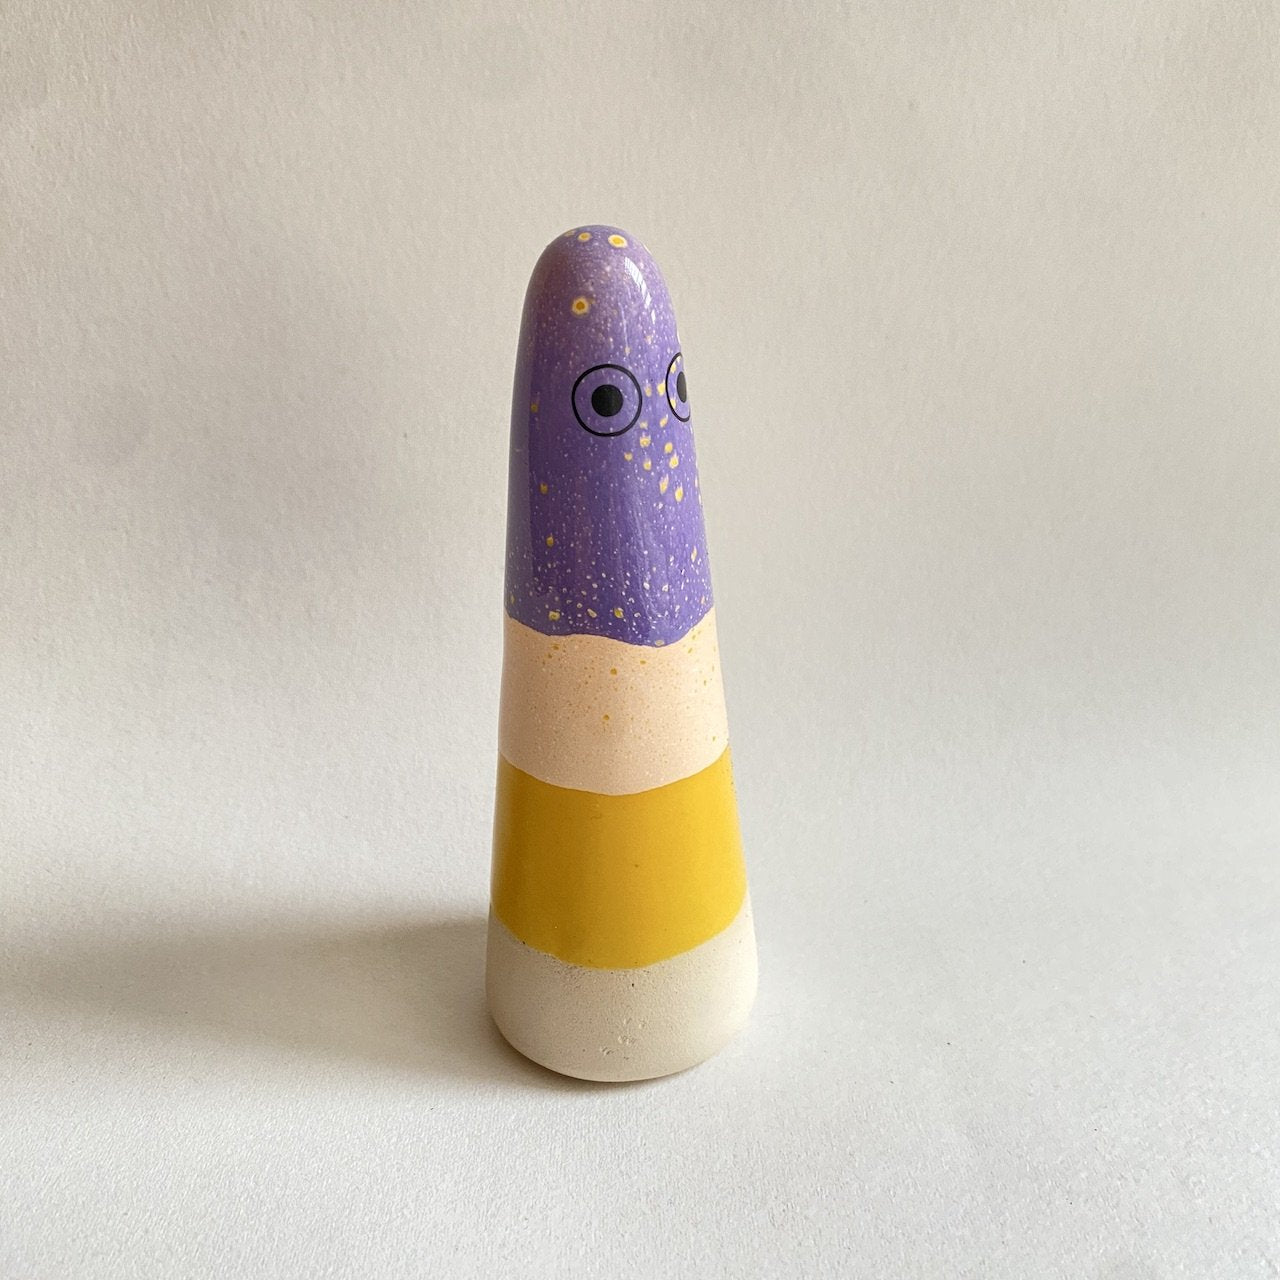 Sea Lab Ghost | Loopy | Ceramic Figurine | by Studio Arhoj - Lifestory